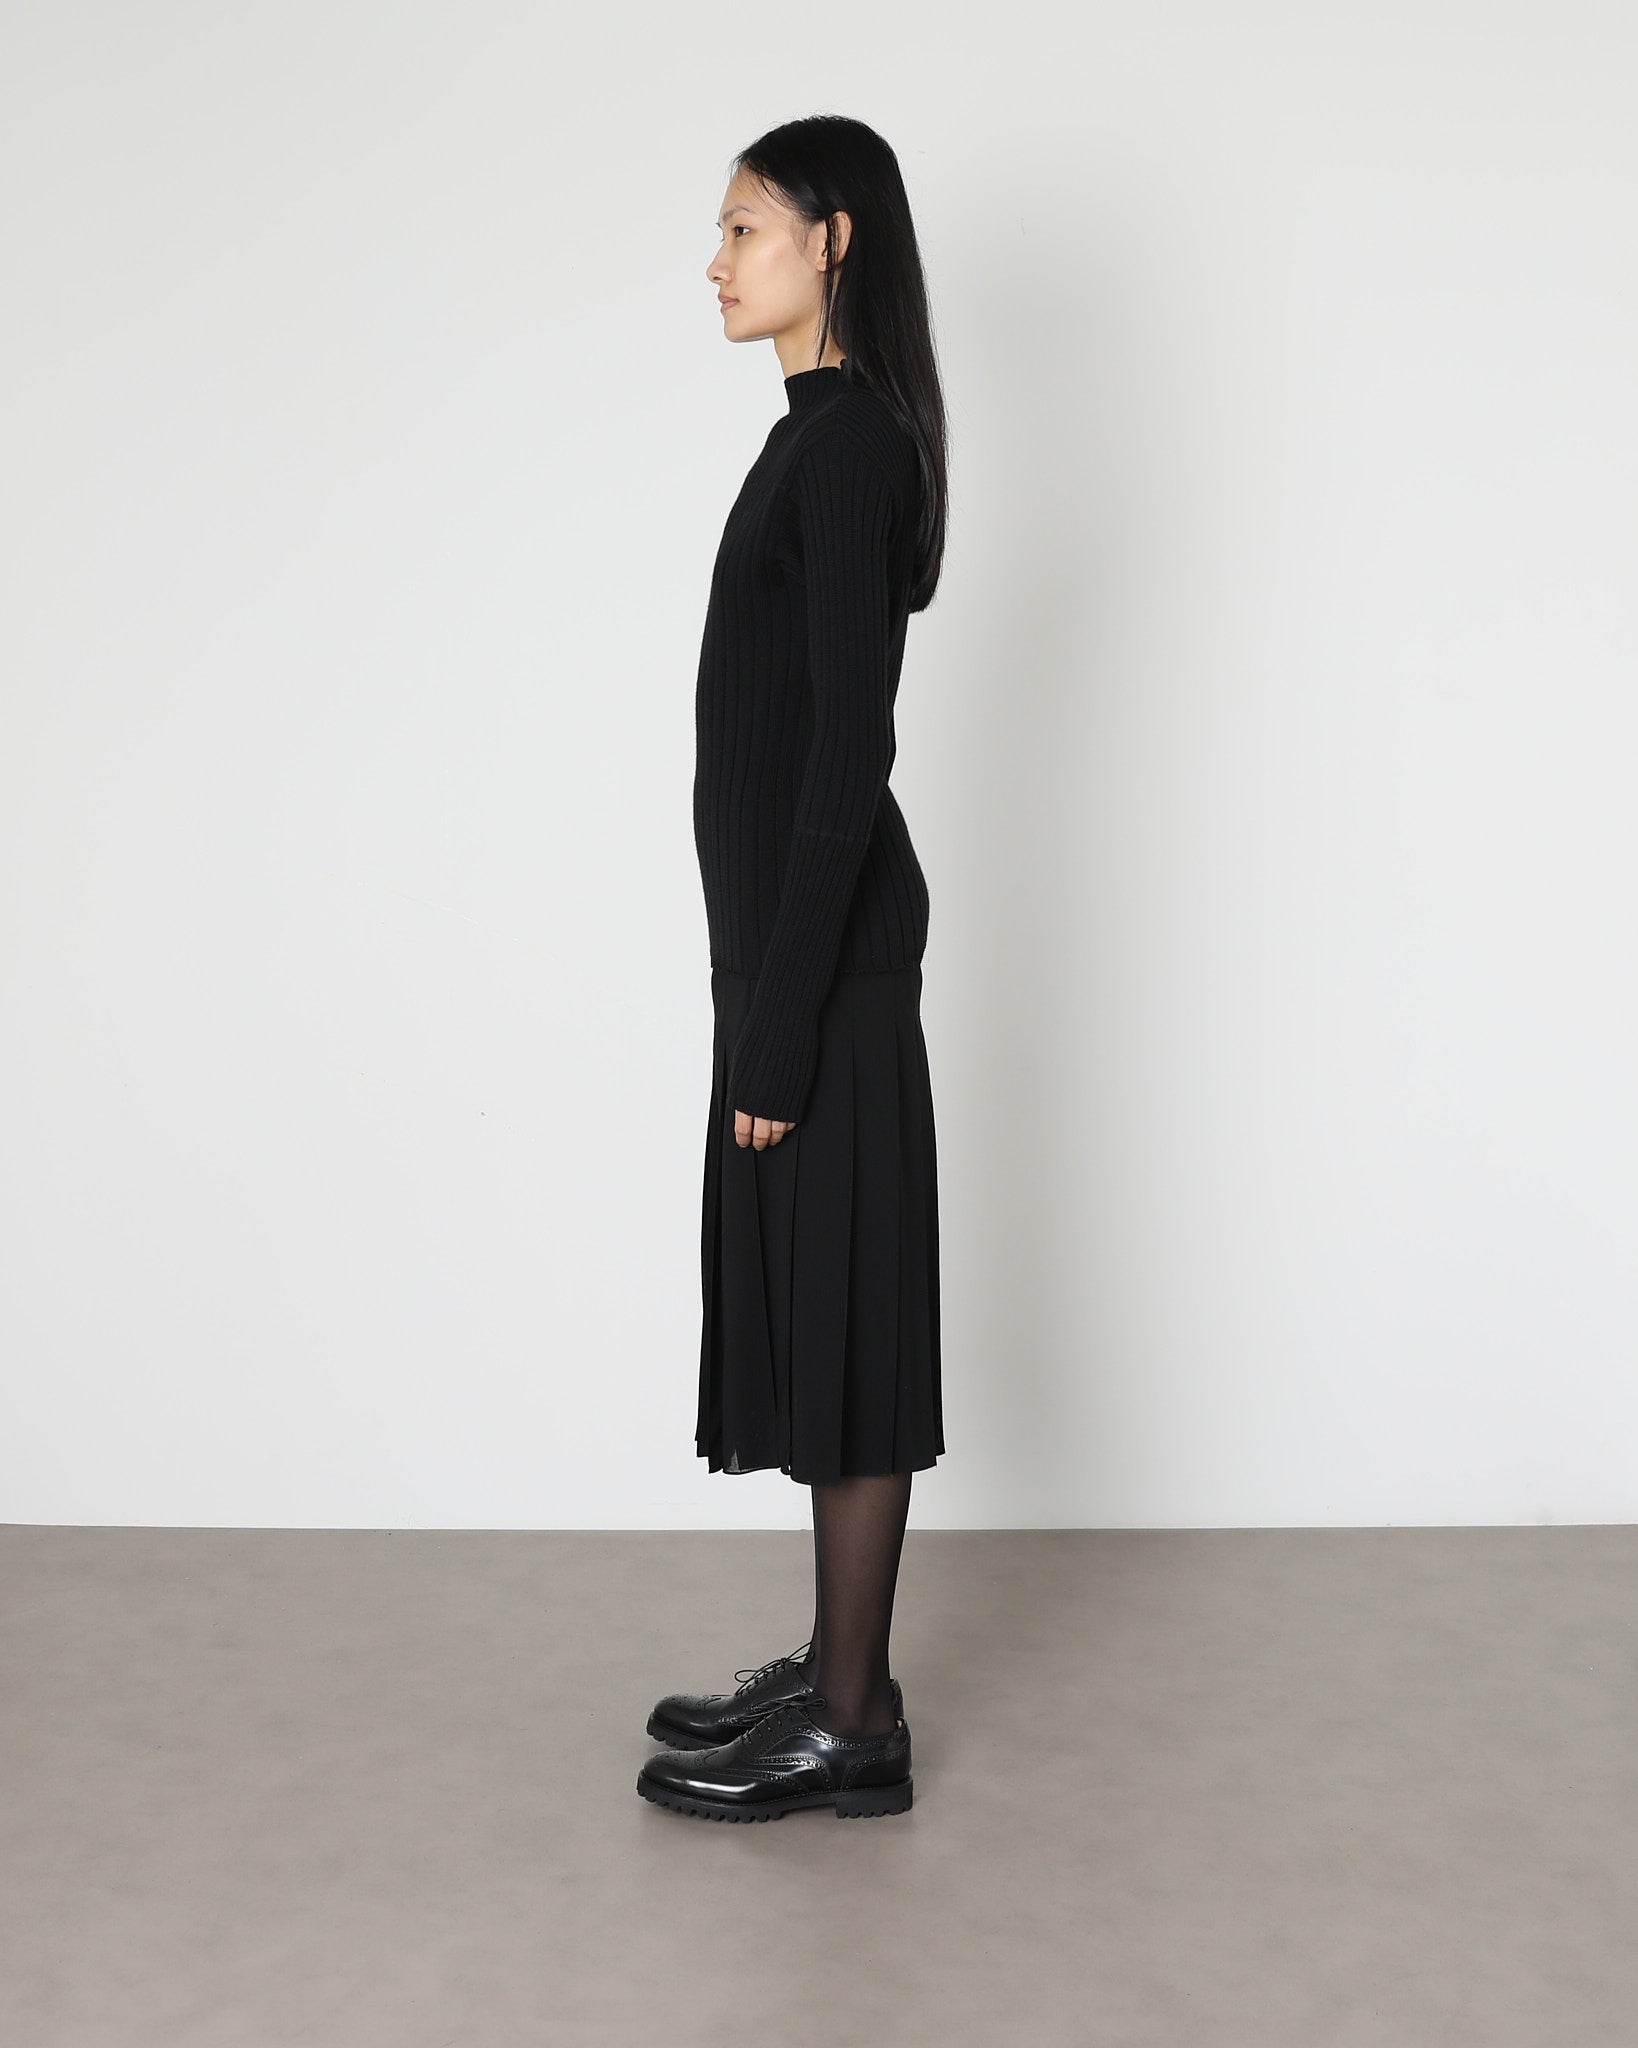 Model wears Issue Twelve Nina Rib Jumper in Black Wool